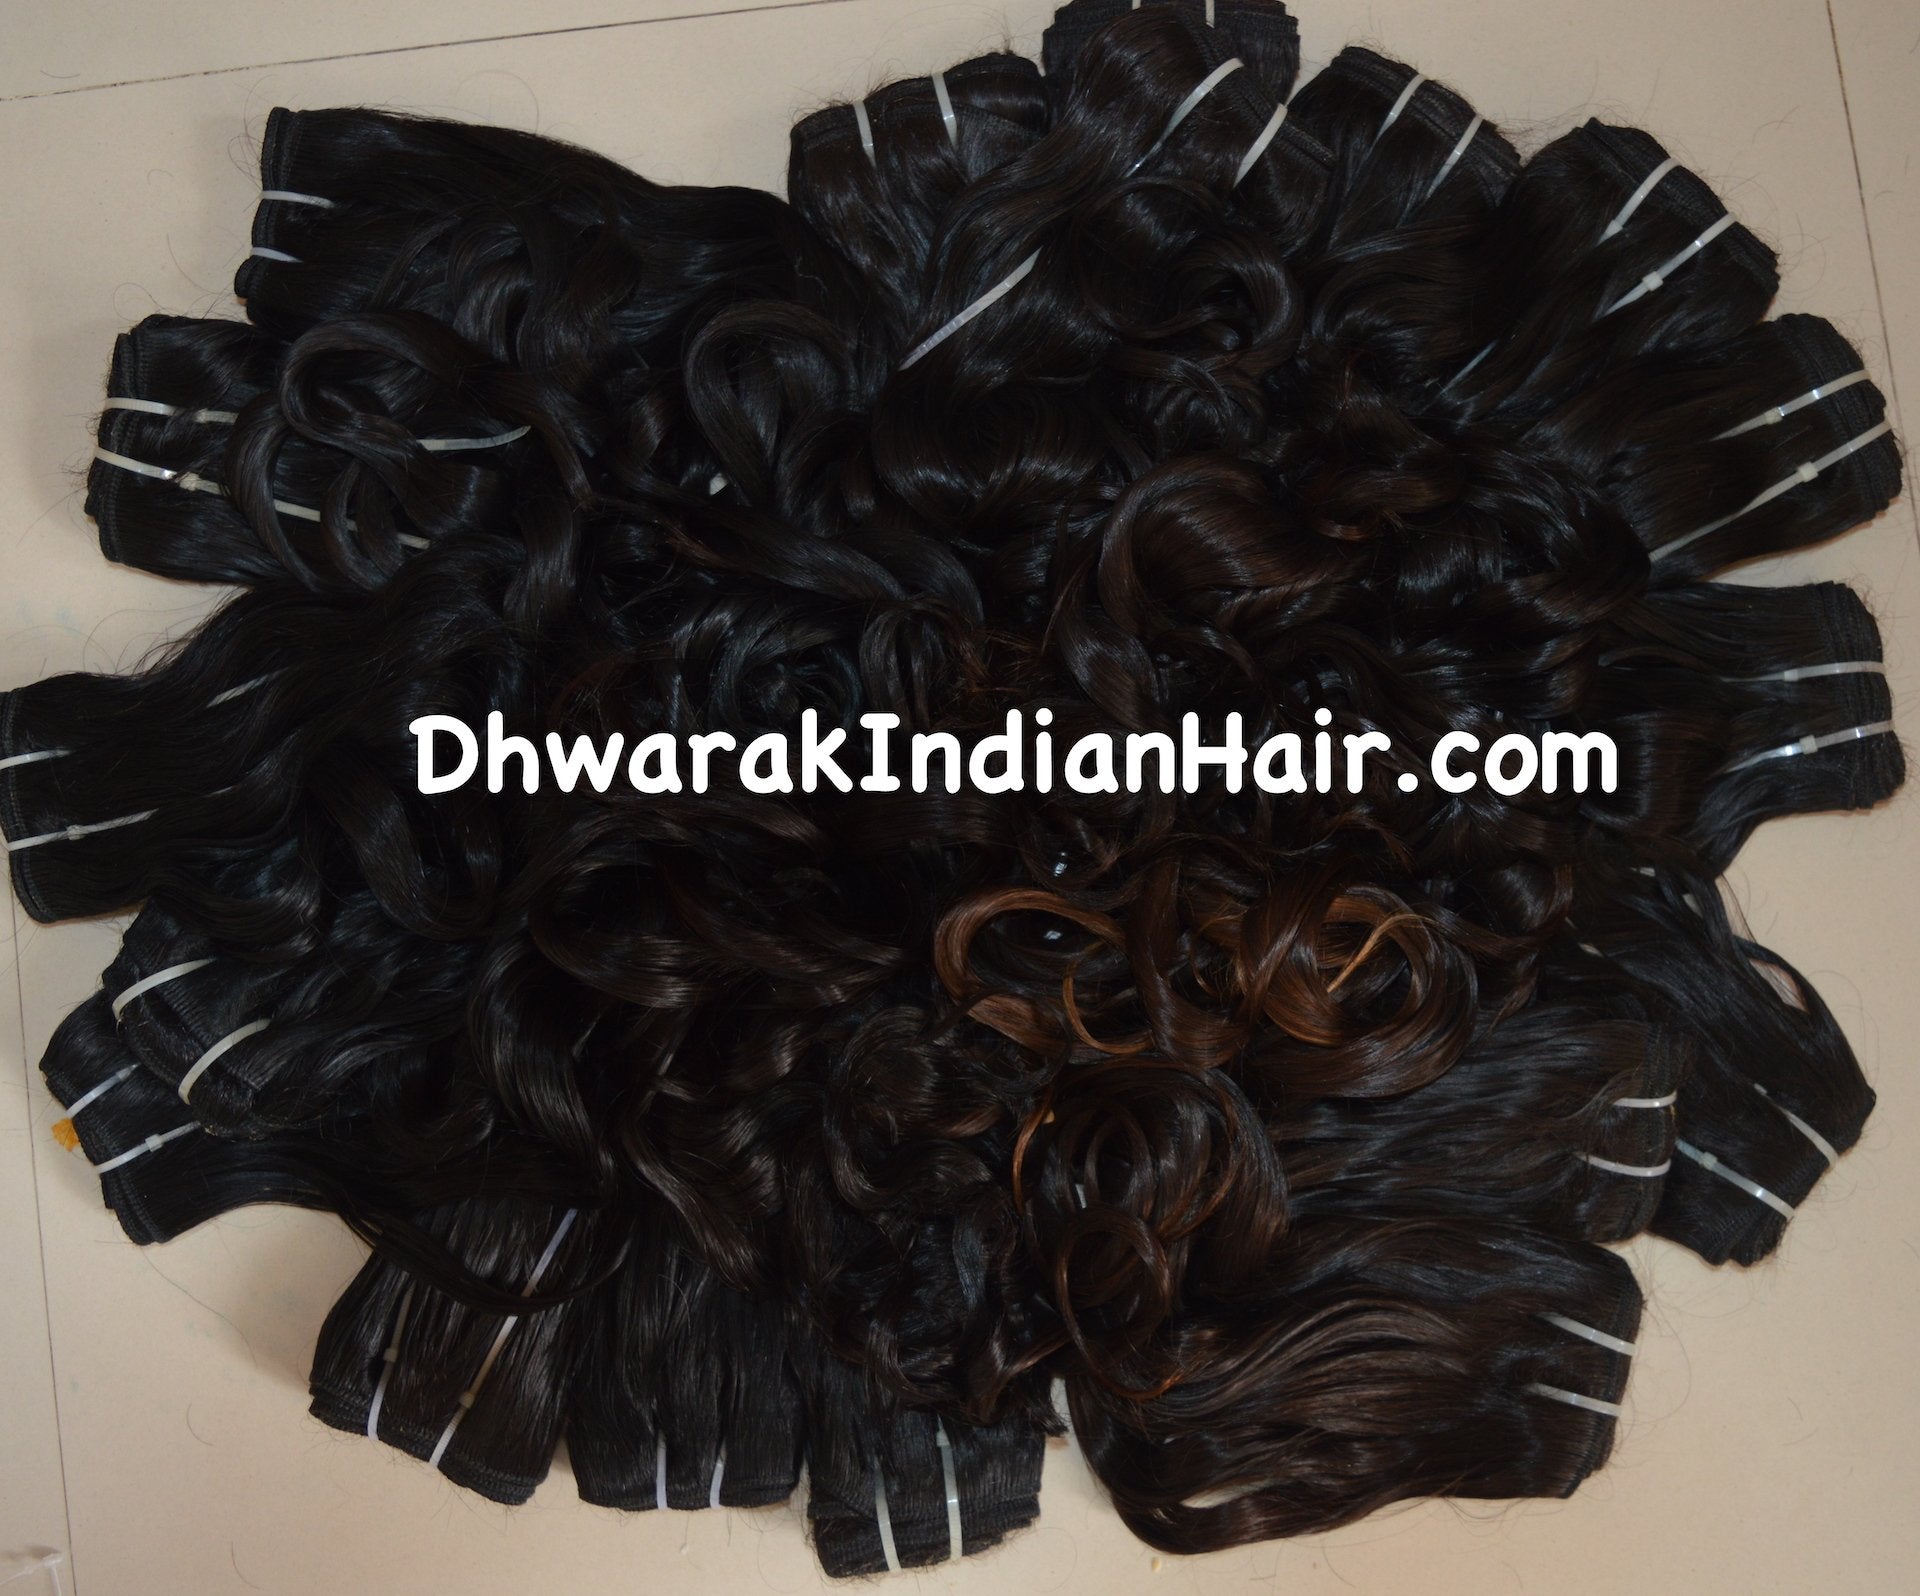 Wholesale Hair Vendor in India